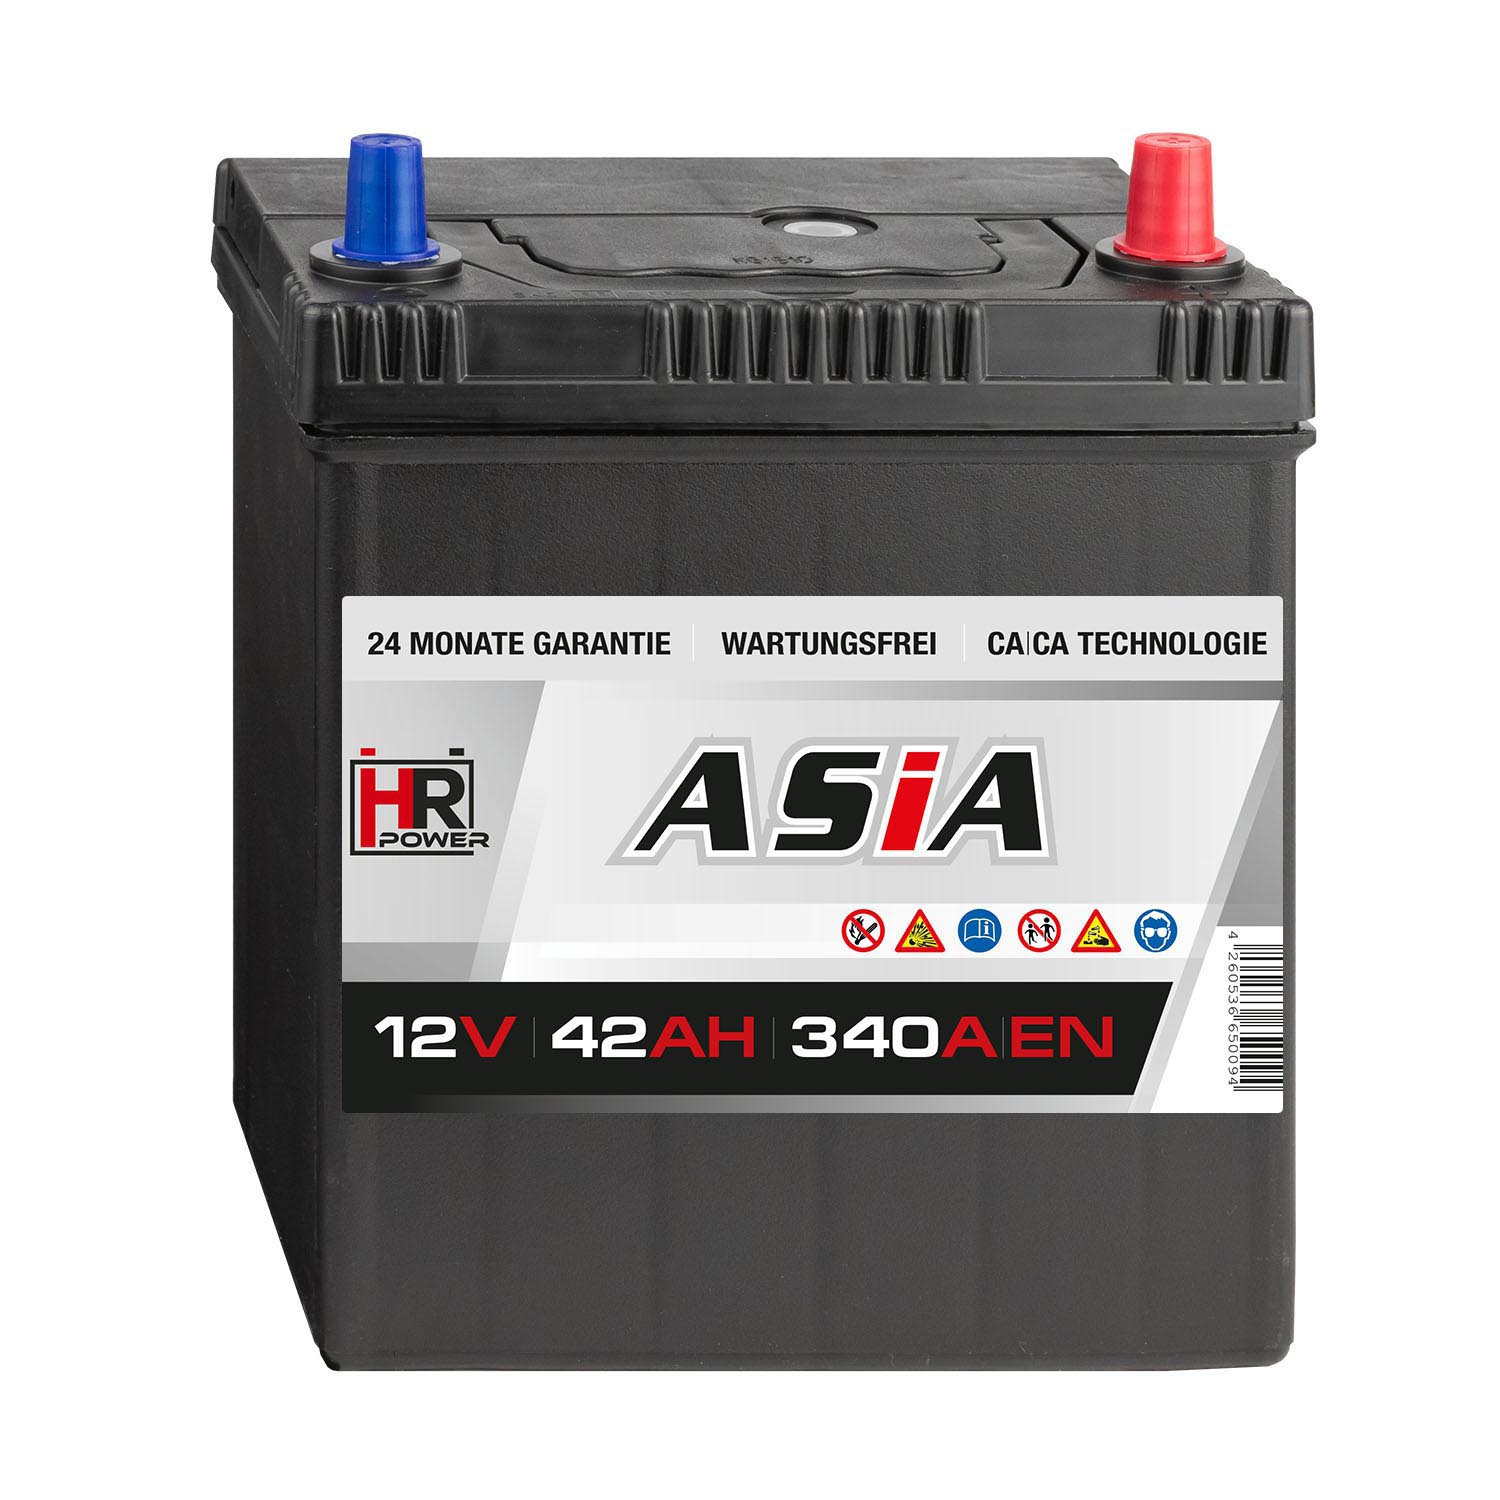 HR HiPower ASIA Autobatterie 12V 42Ah